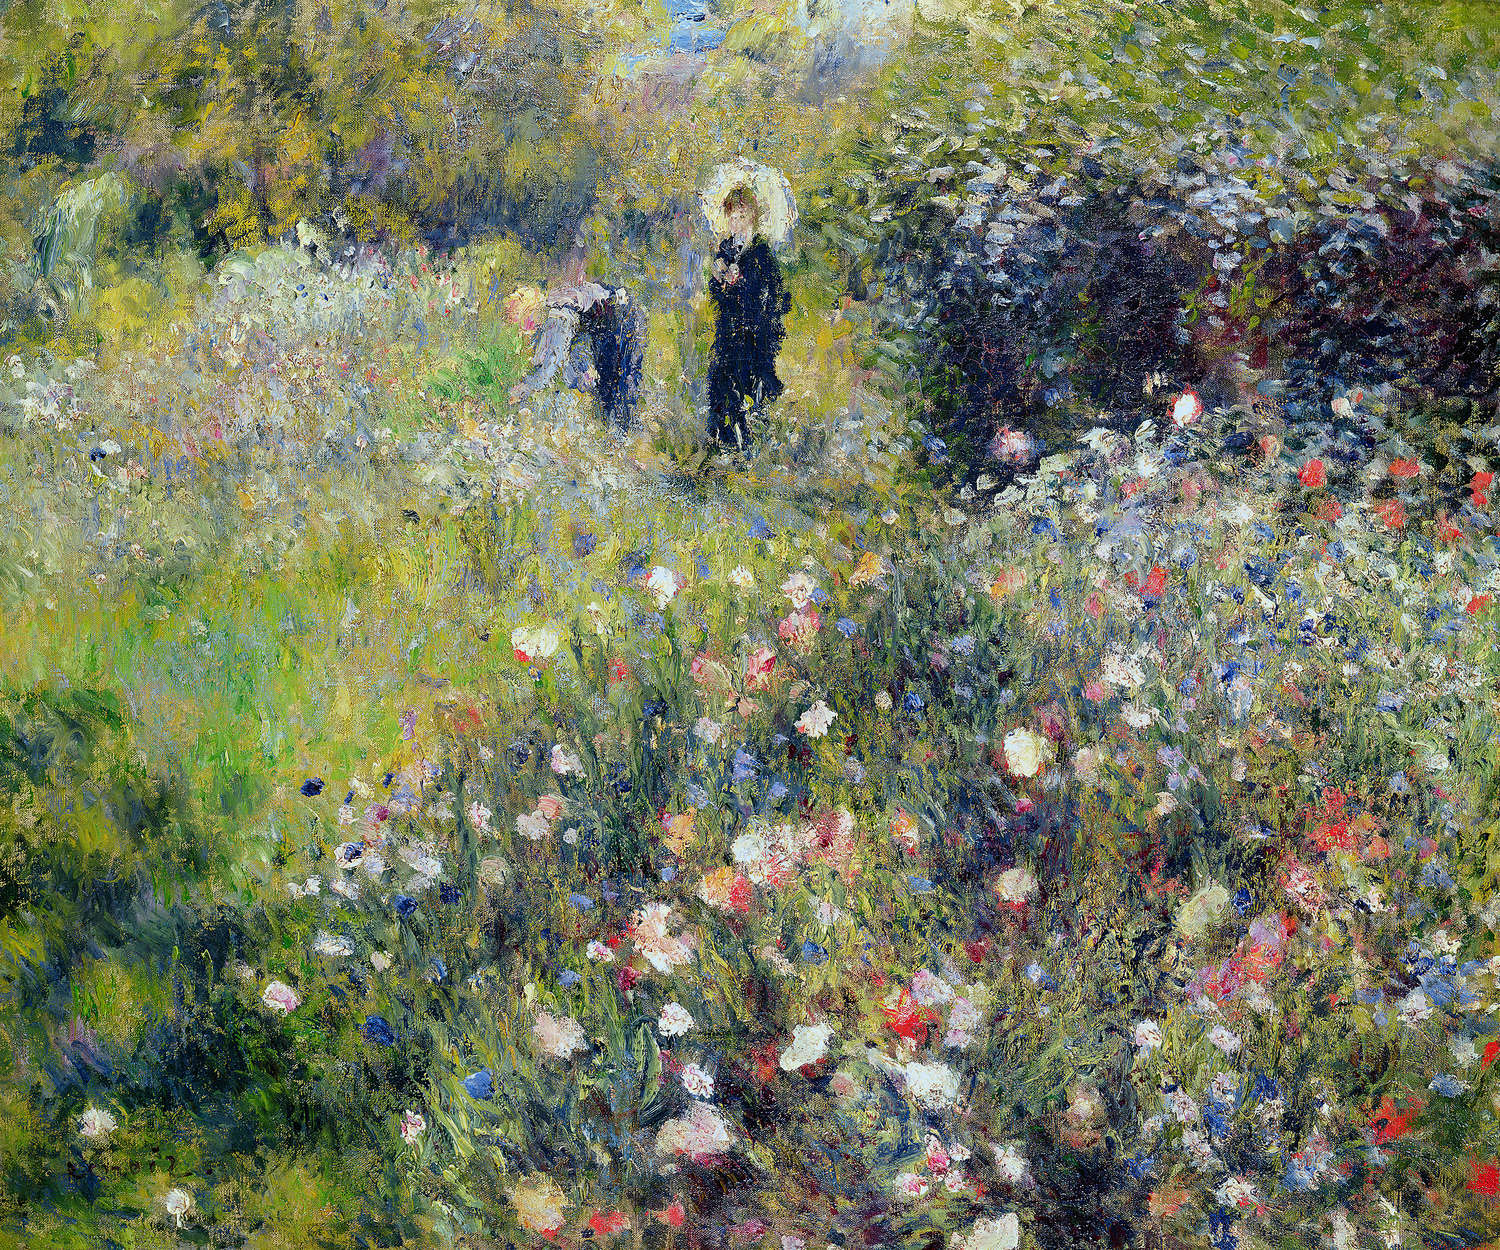             Muurschildering "Vrouw met parasol in een tuin" van Pierre Auguste Renoir
        